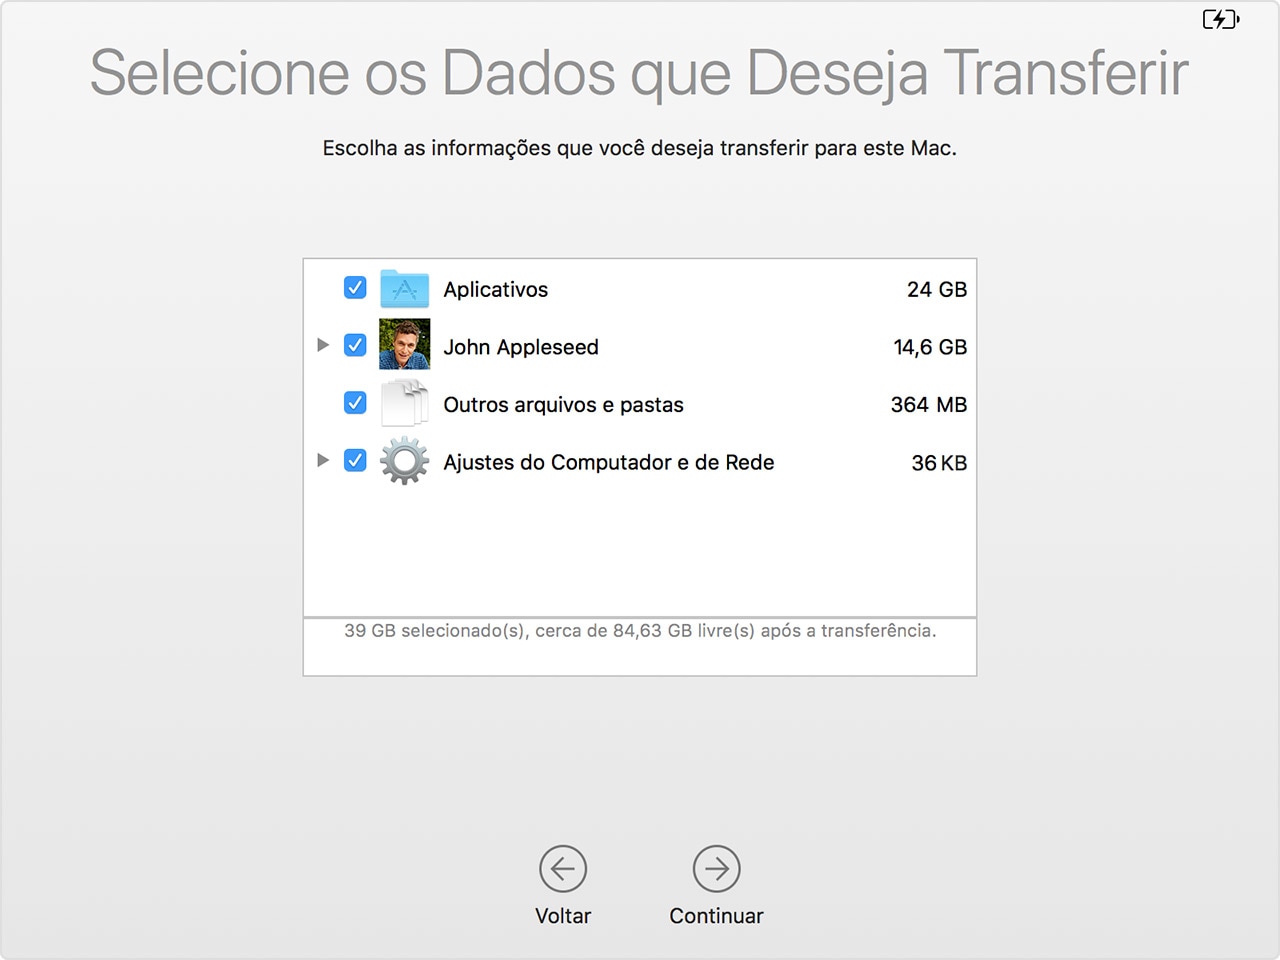 Assistente de Migração do macOS: dados